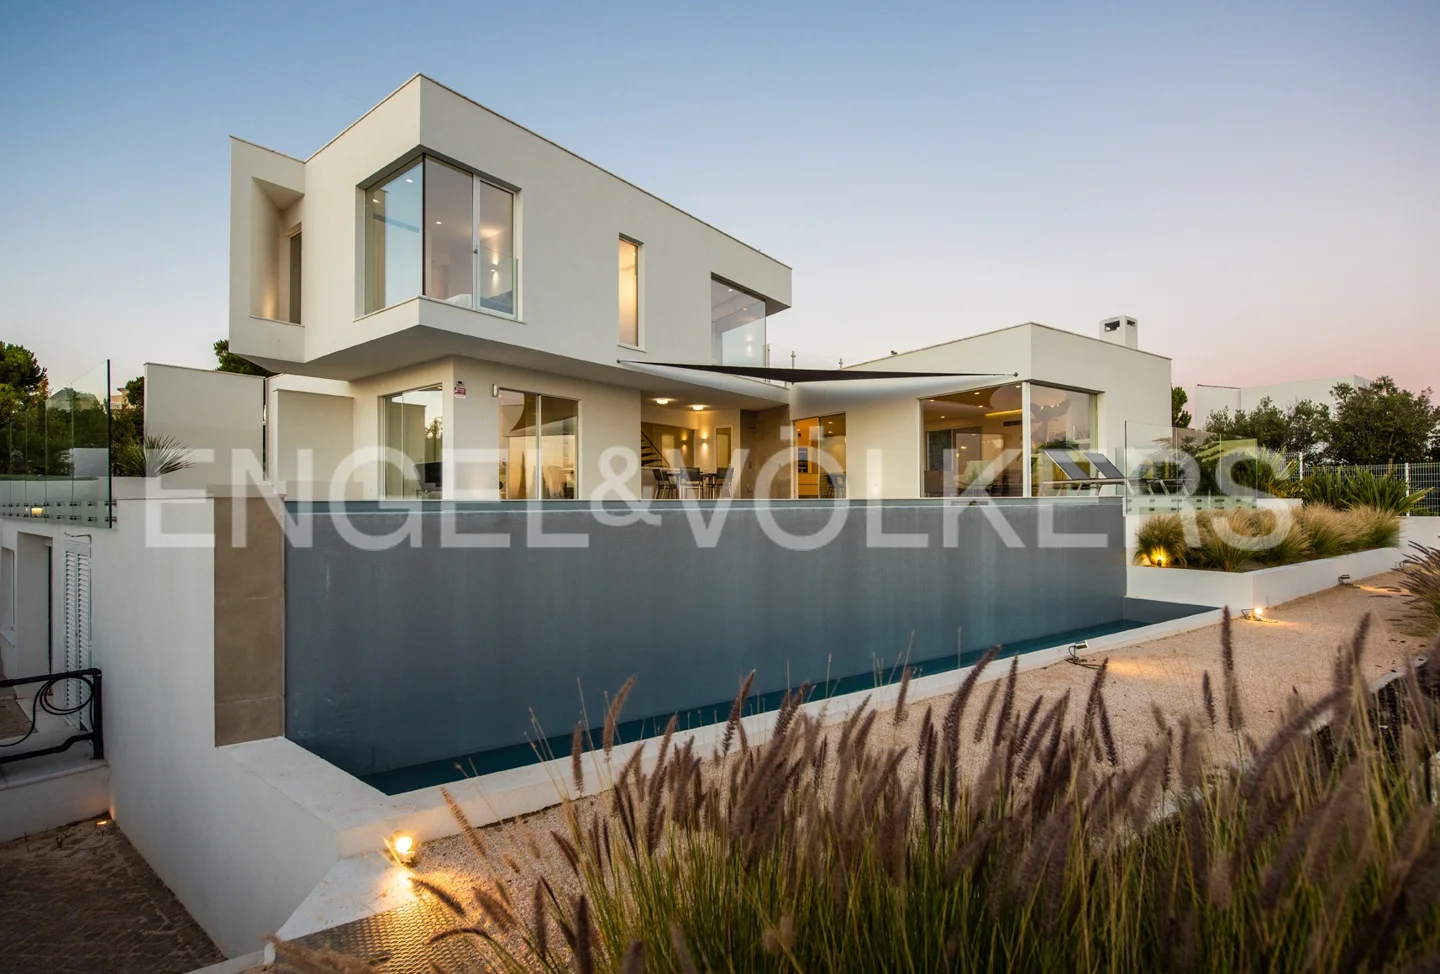 Luxury contemporary 4-bedroom villa